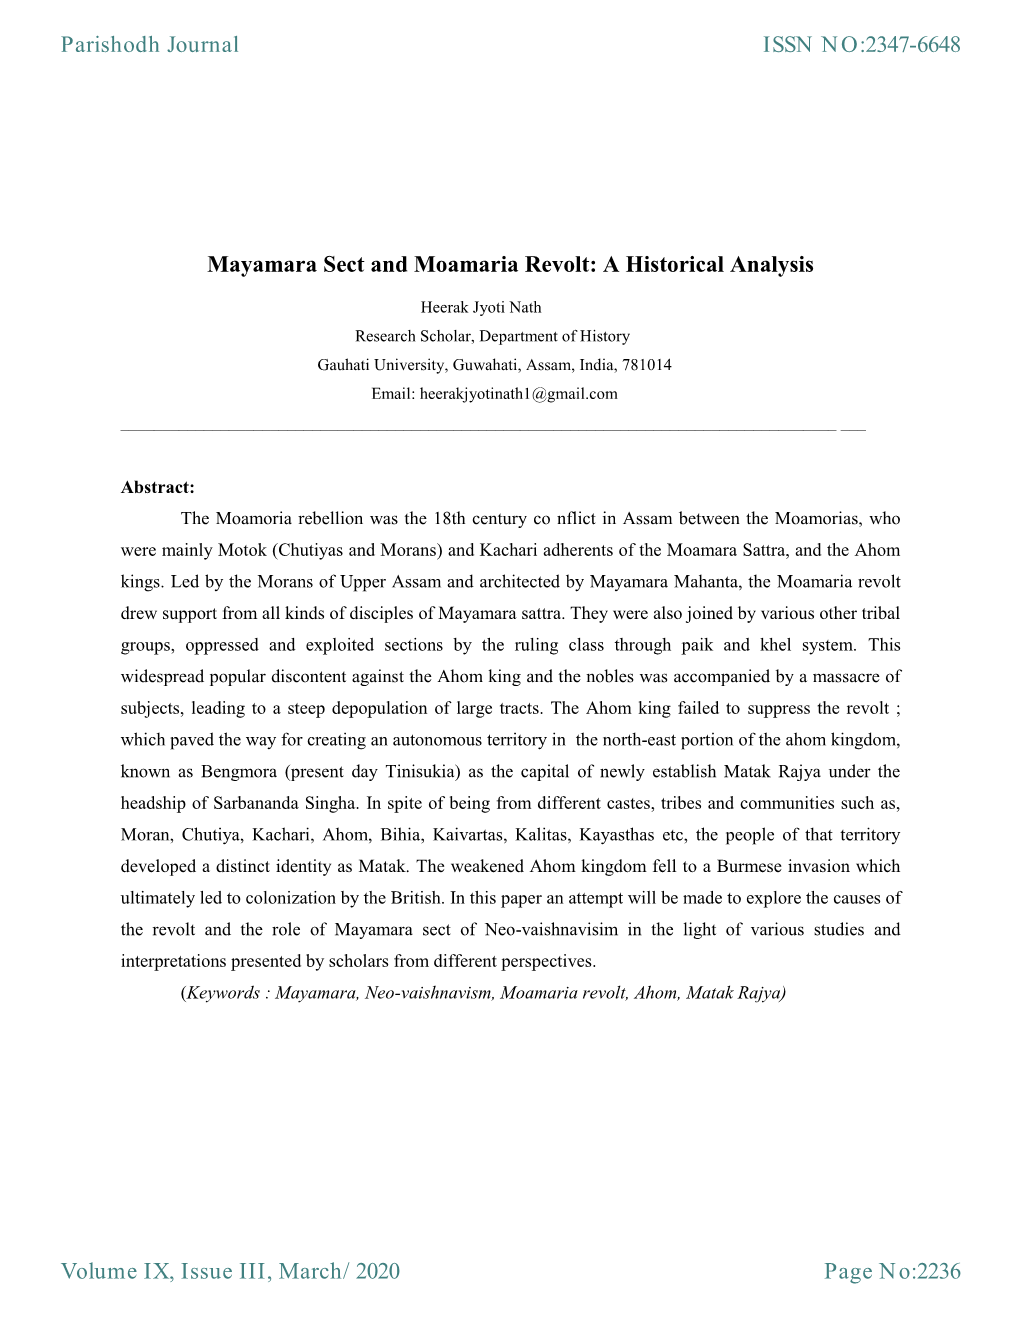 Mayamara Sect and Moamaria Revolt: a Historical Analysis